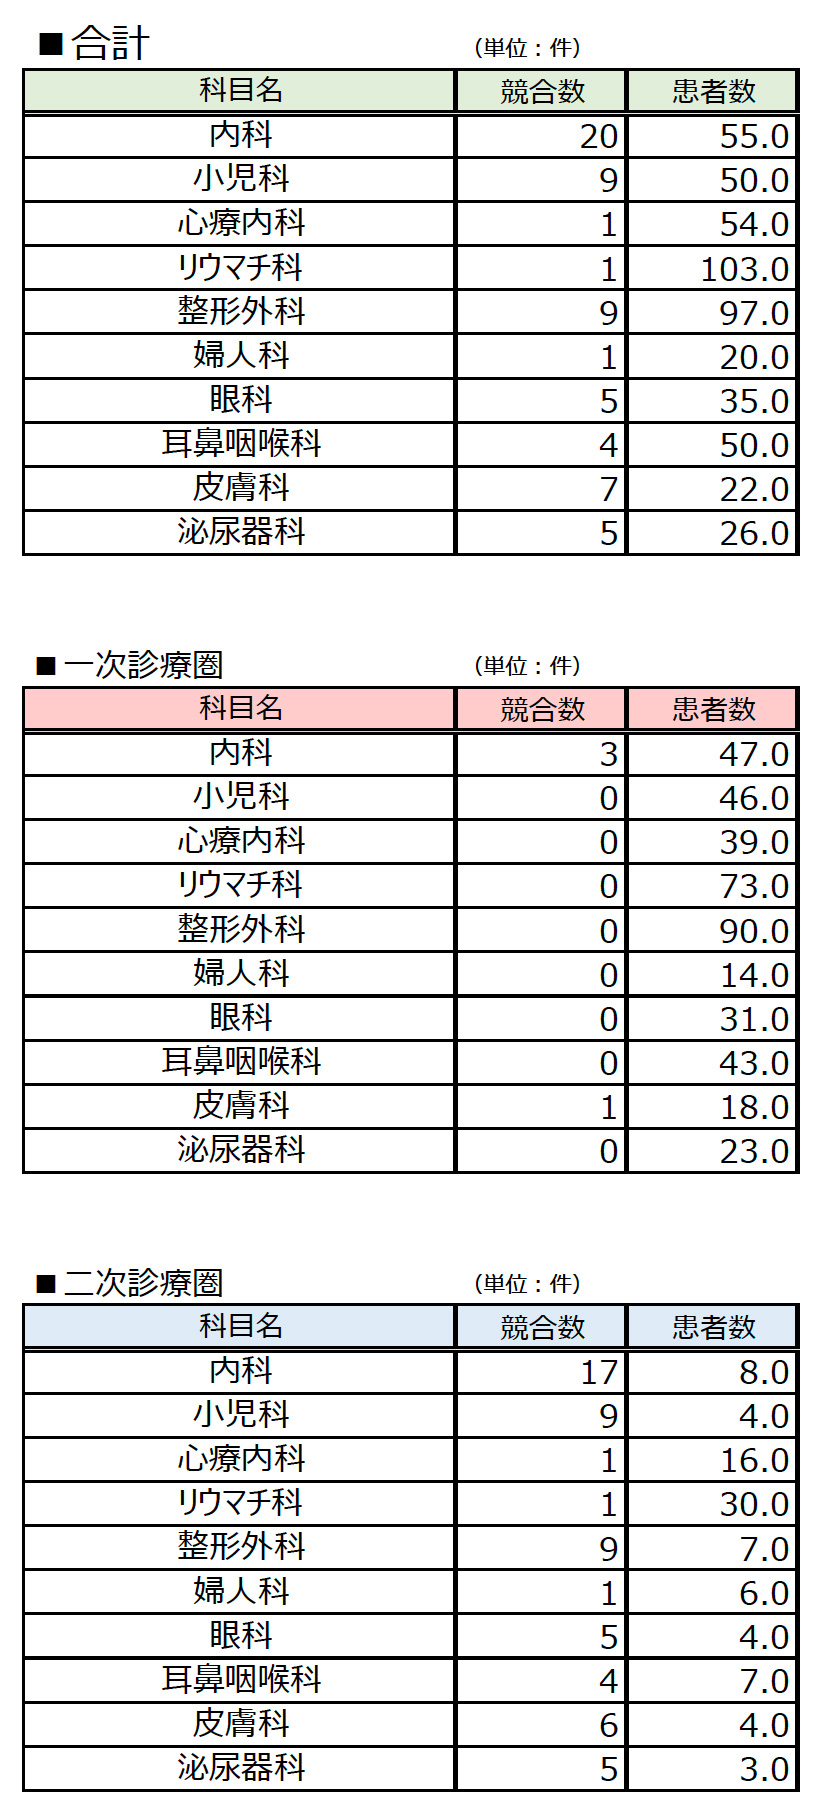 秋山の診療圏データ：患者数予測（１次半径1km、2時半径2km）